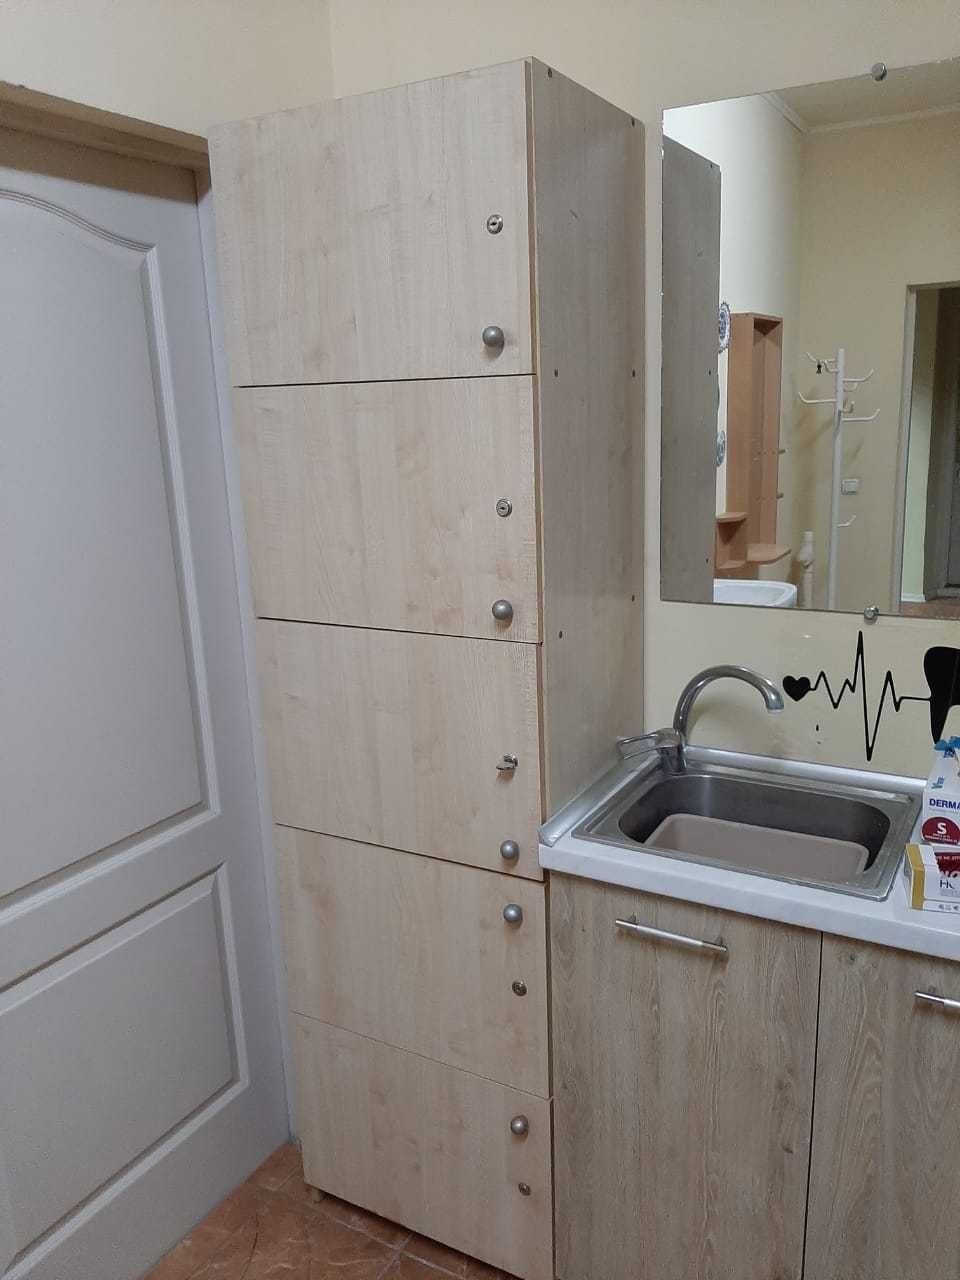 комод с выдвижными ящиками для кухни, шкаф кухонный , мини-кухня